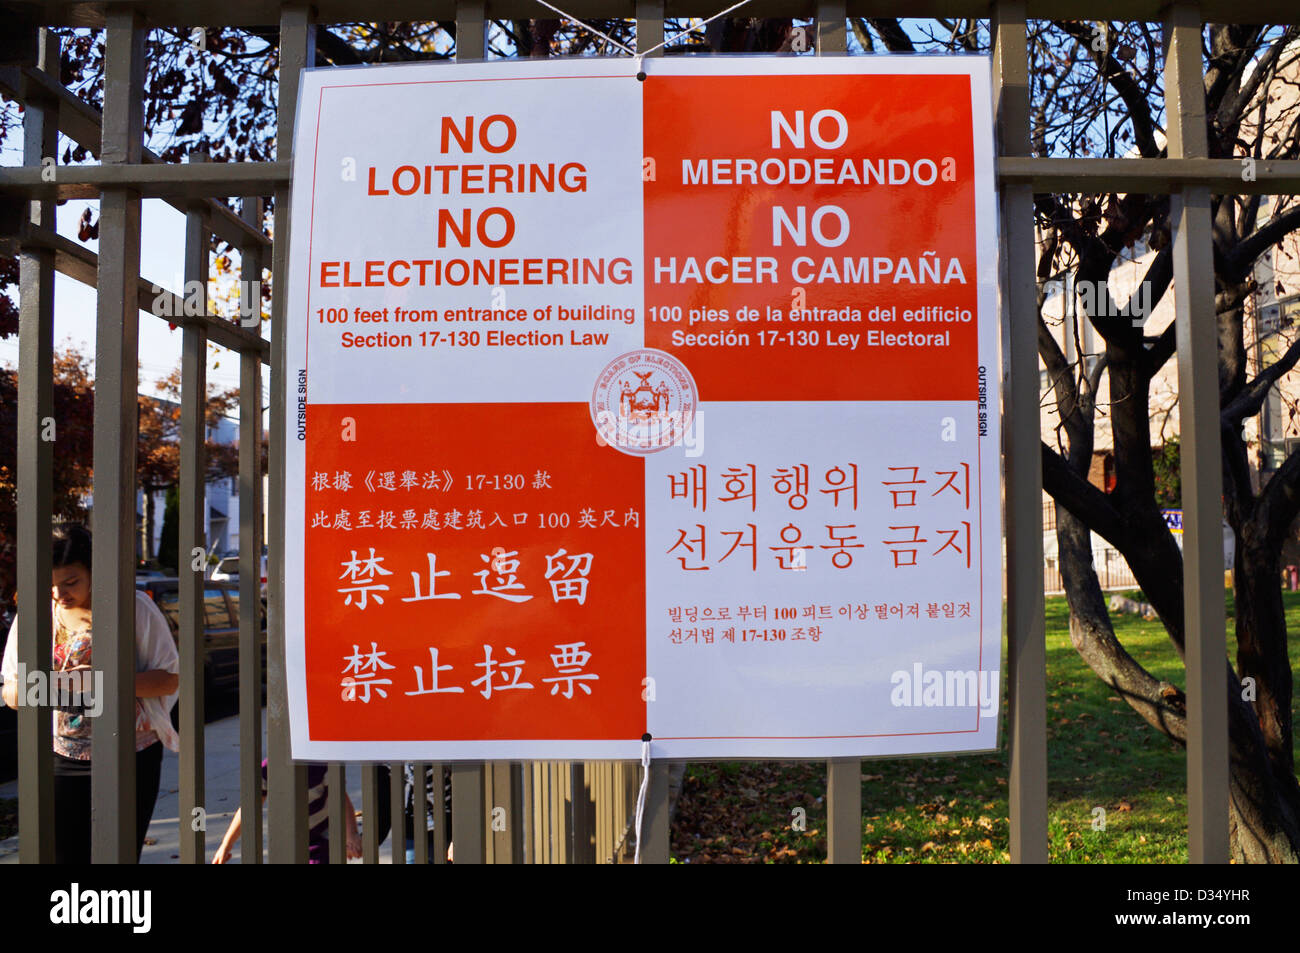 Multi-language posté signer attention pas de vagabondage et pas de l'électoralisme à moins de 100 pieds d'entrée de l'emplacement de vote aux Etats-Unis Banque D'Images